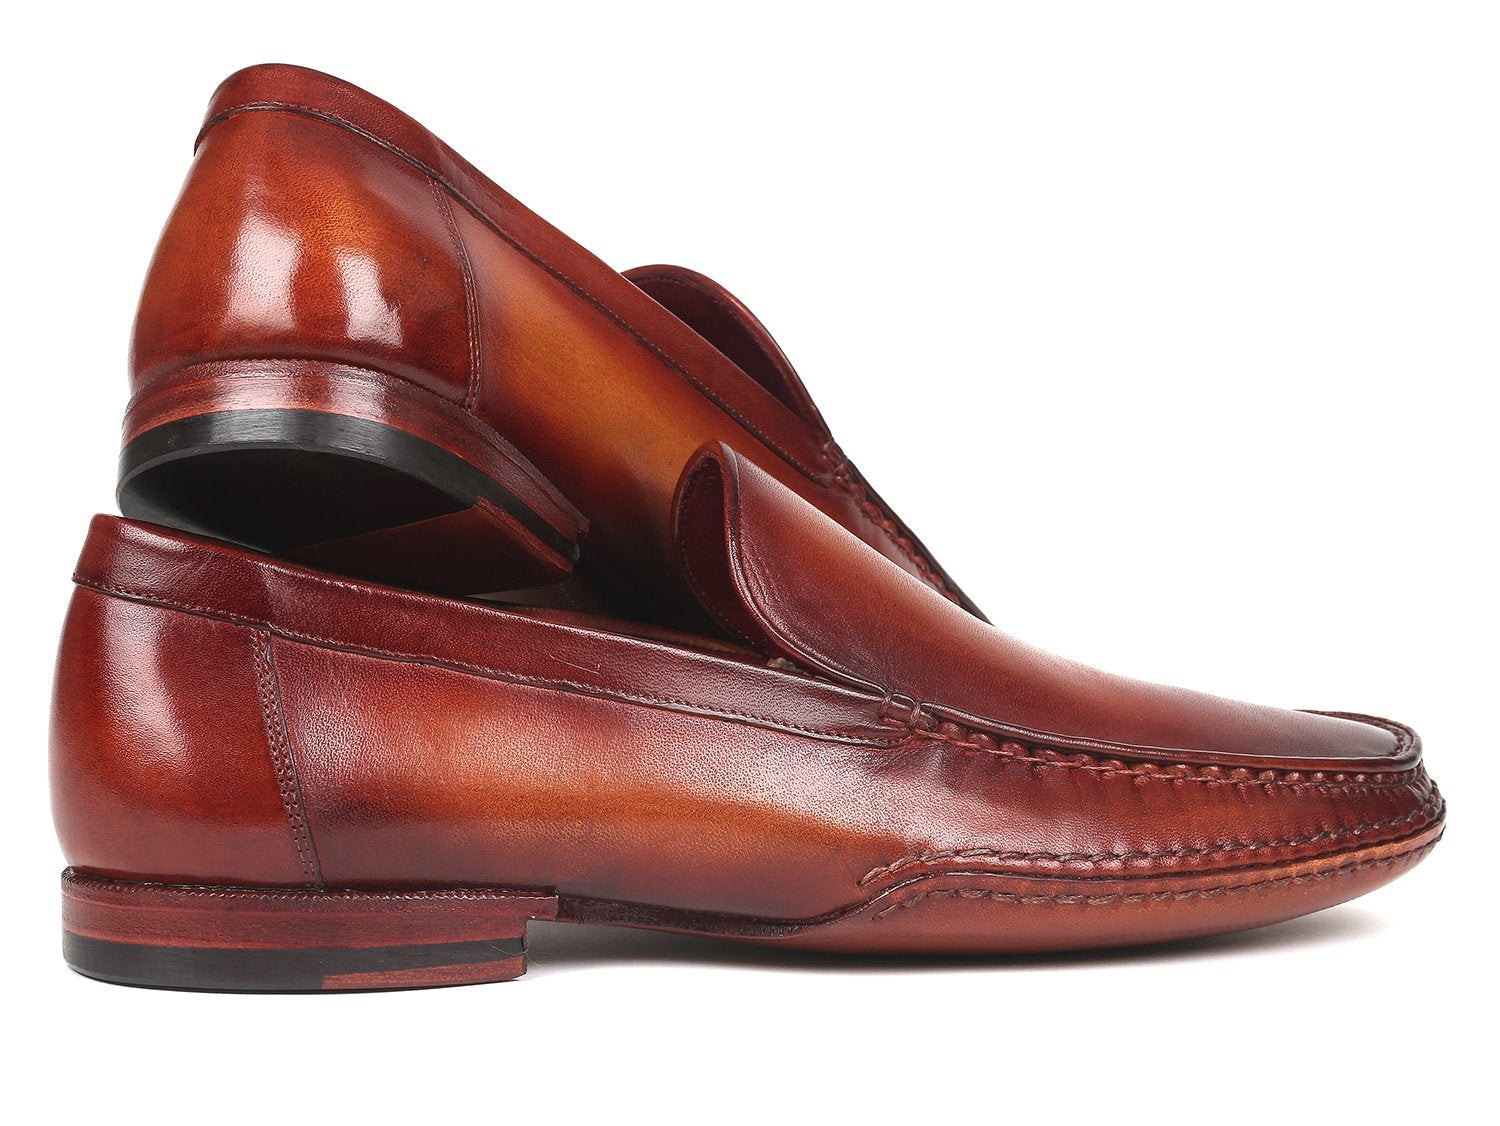 Handgemachte Schuhe aus den USA Paul Parkman handgenähte Mokassins Brown tif shop 24.de